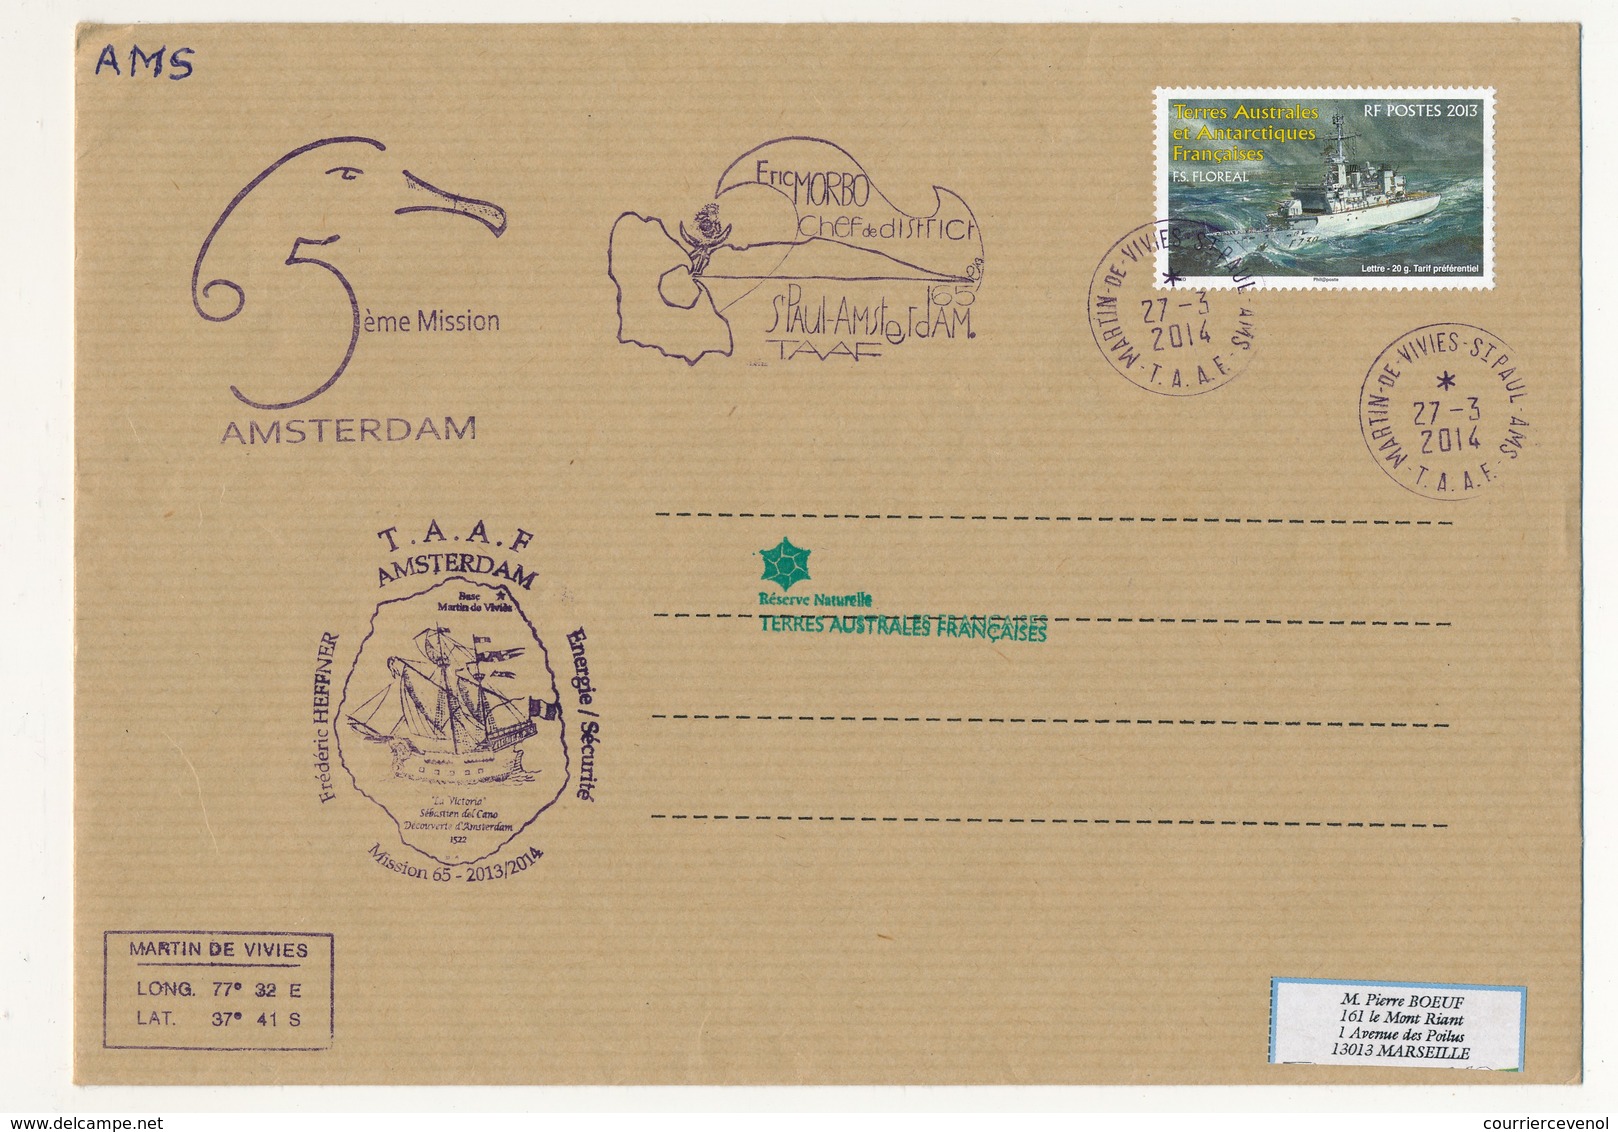 T.A.A.F - Enveloppe Martin De Vivies - St Paul Ams - 27/3/2014 - FS Floreal / 5eme Mission Amsterdam - Briefe U. Dokumente